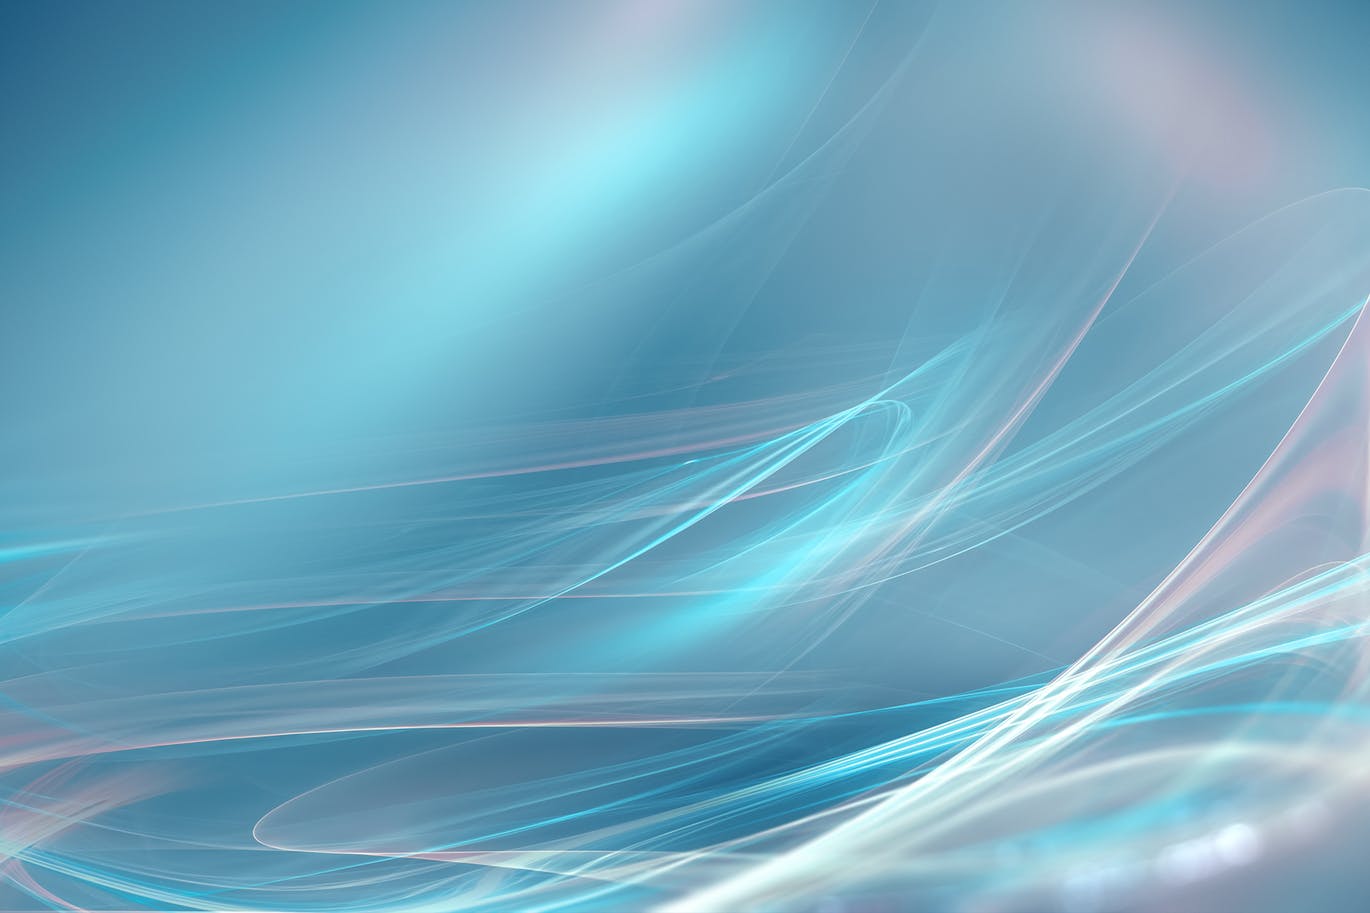 超高清抽象平滑线条蓝色背景素材v2 abstract blue background插图